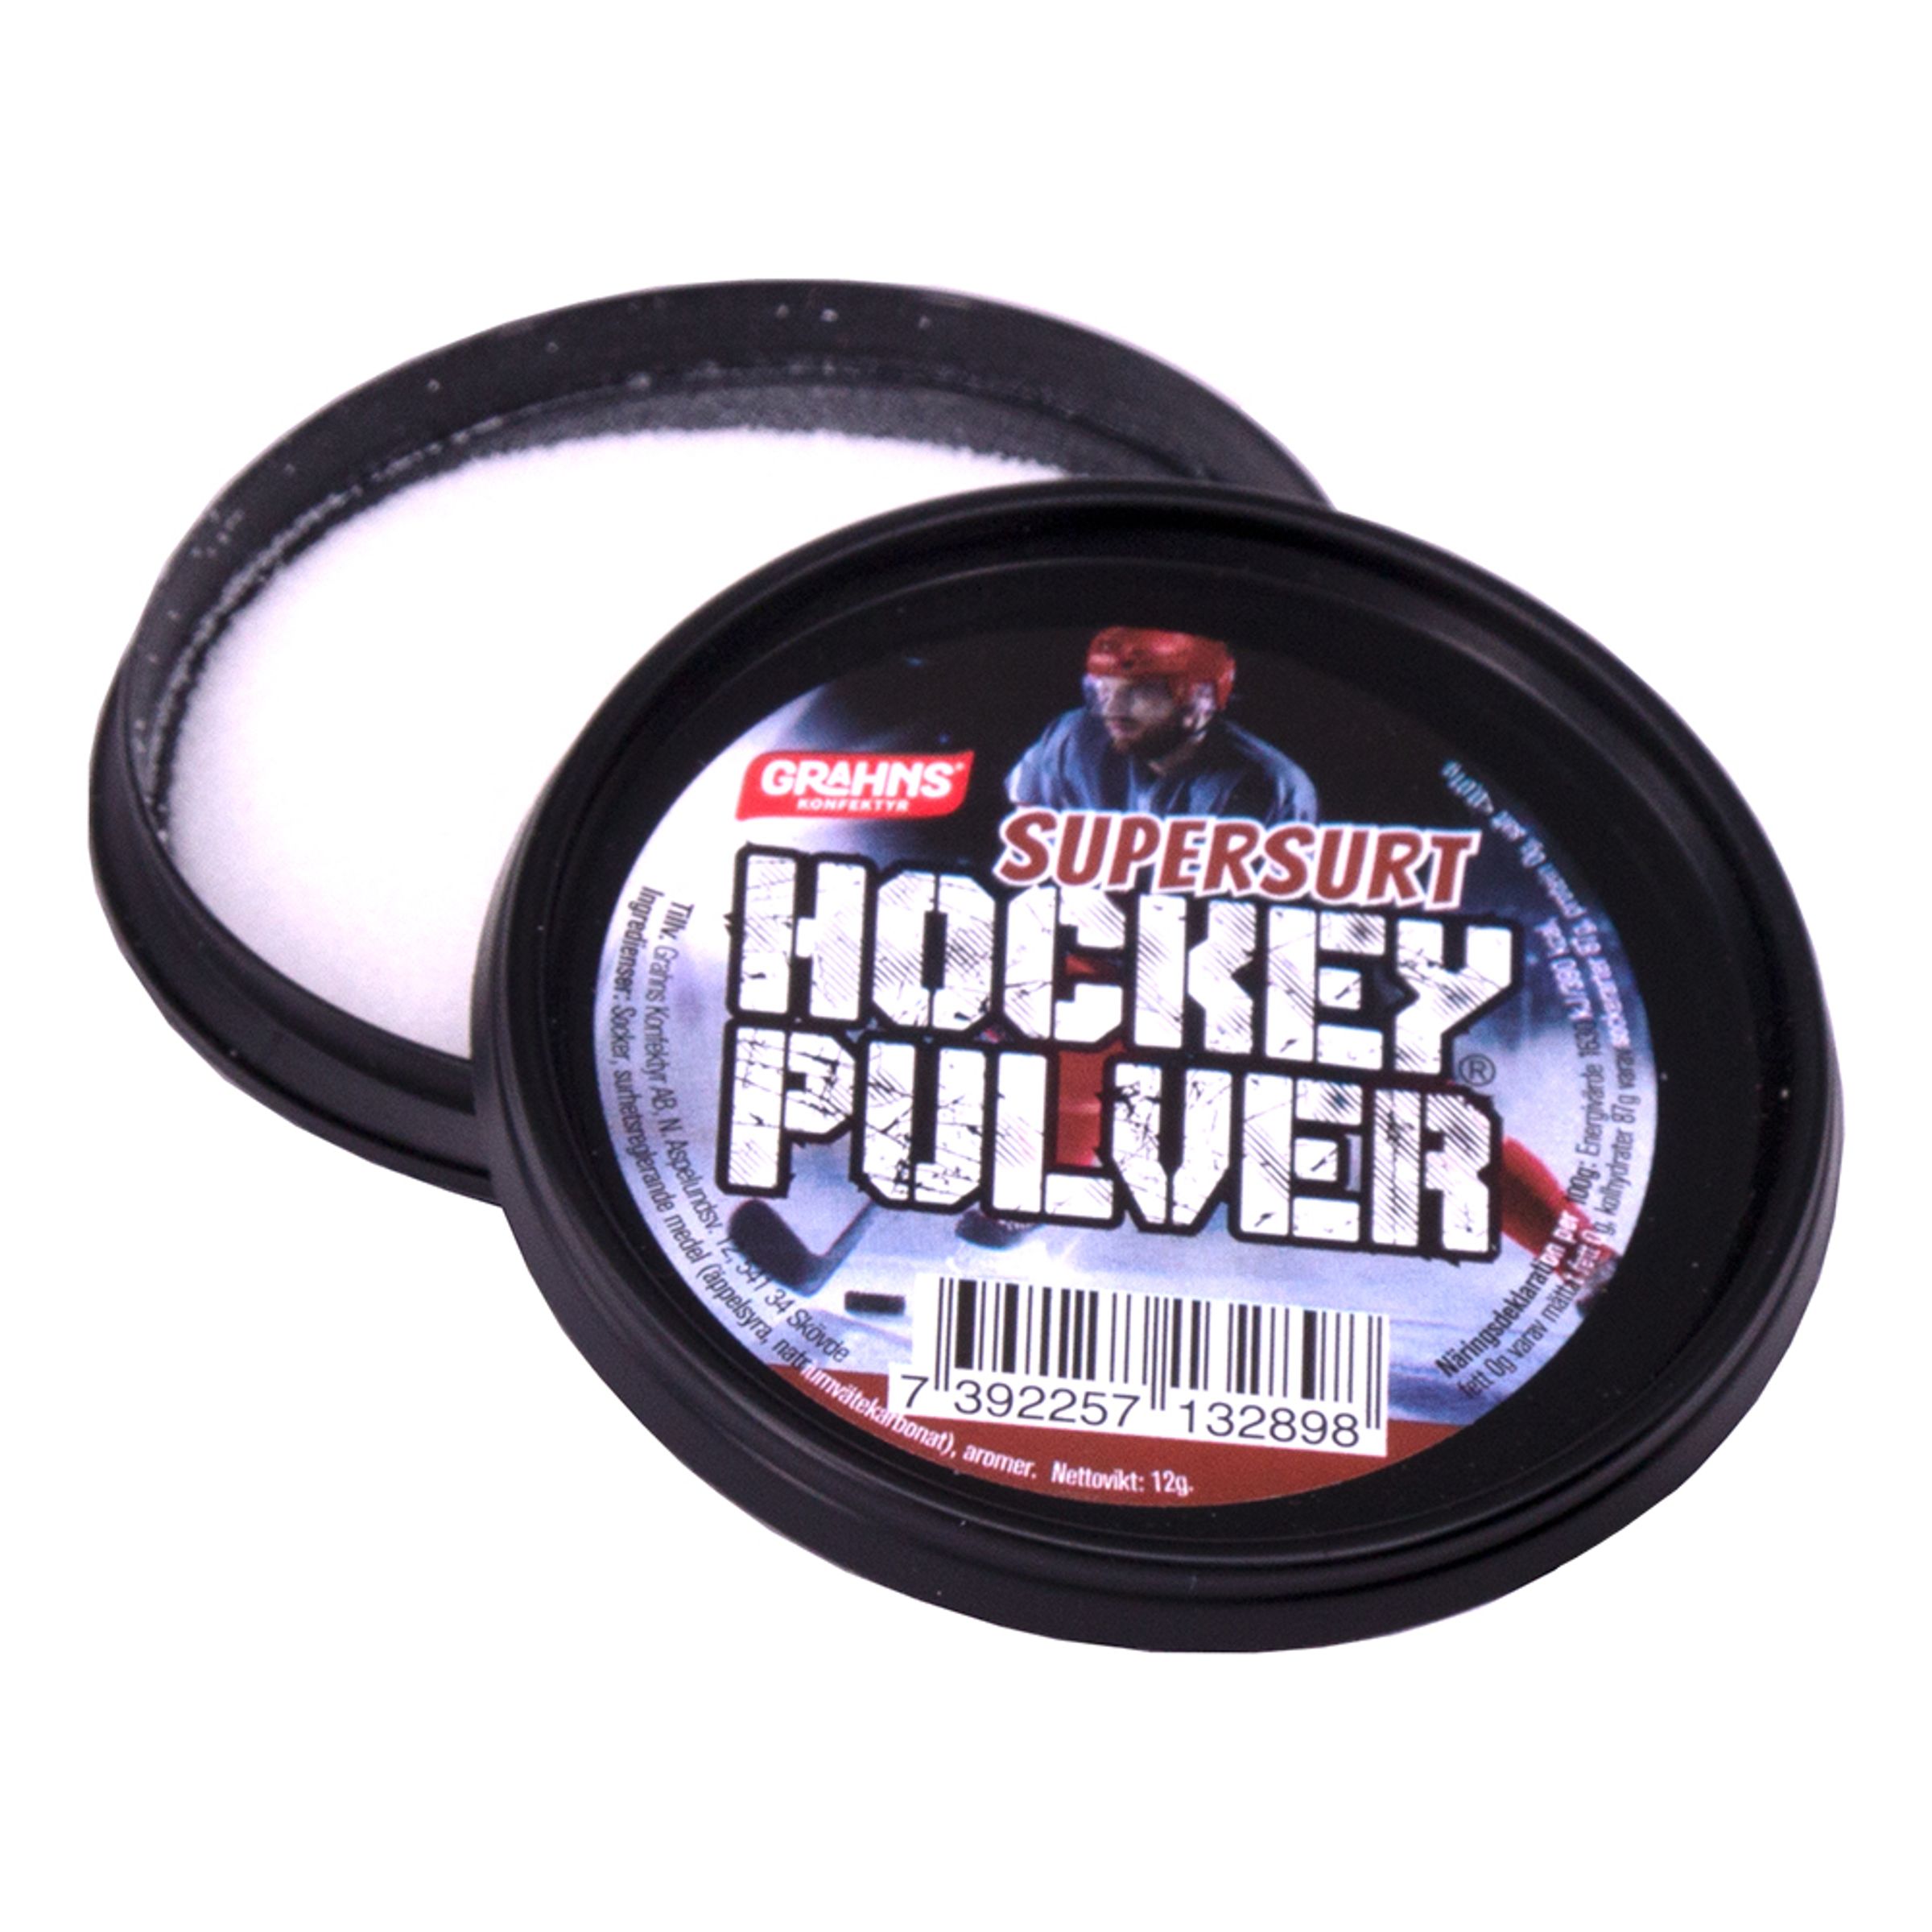 Hockeypulver Super Surt - 60-pack